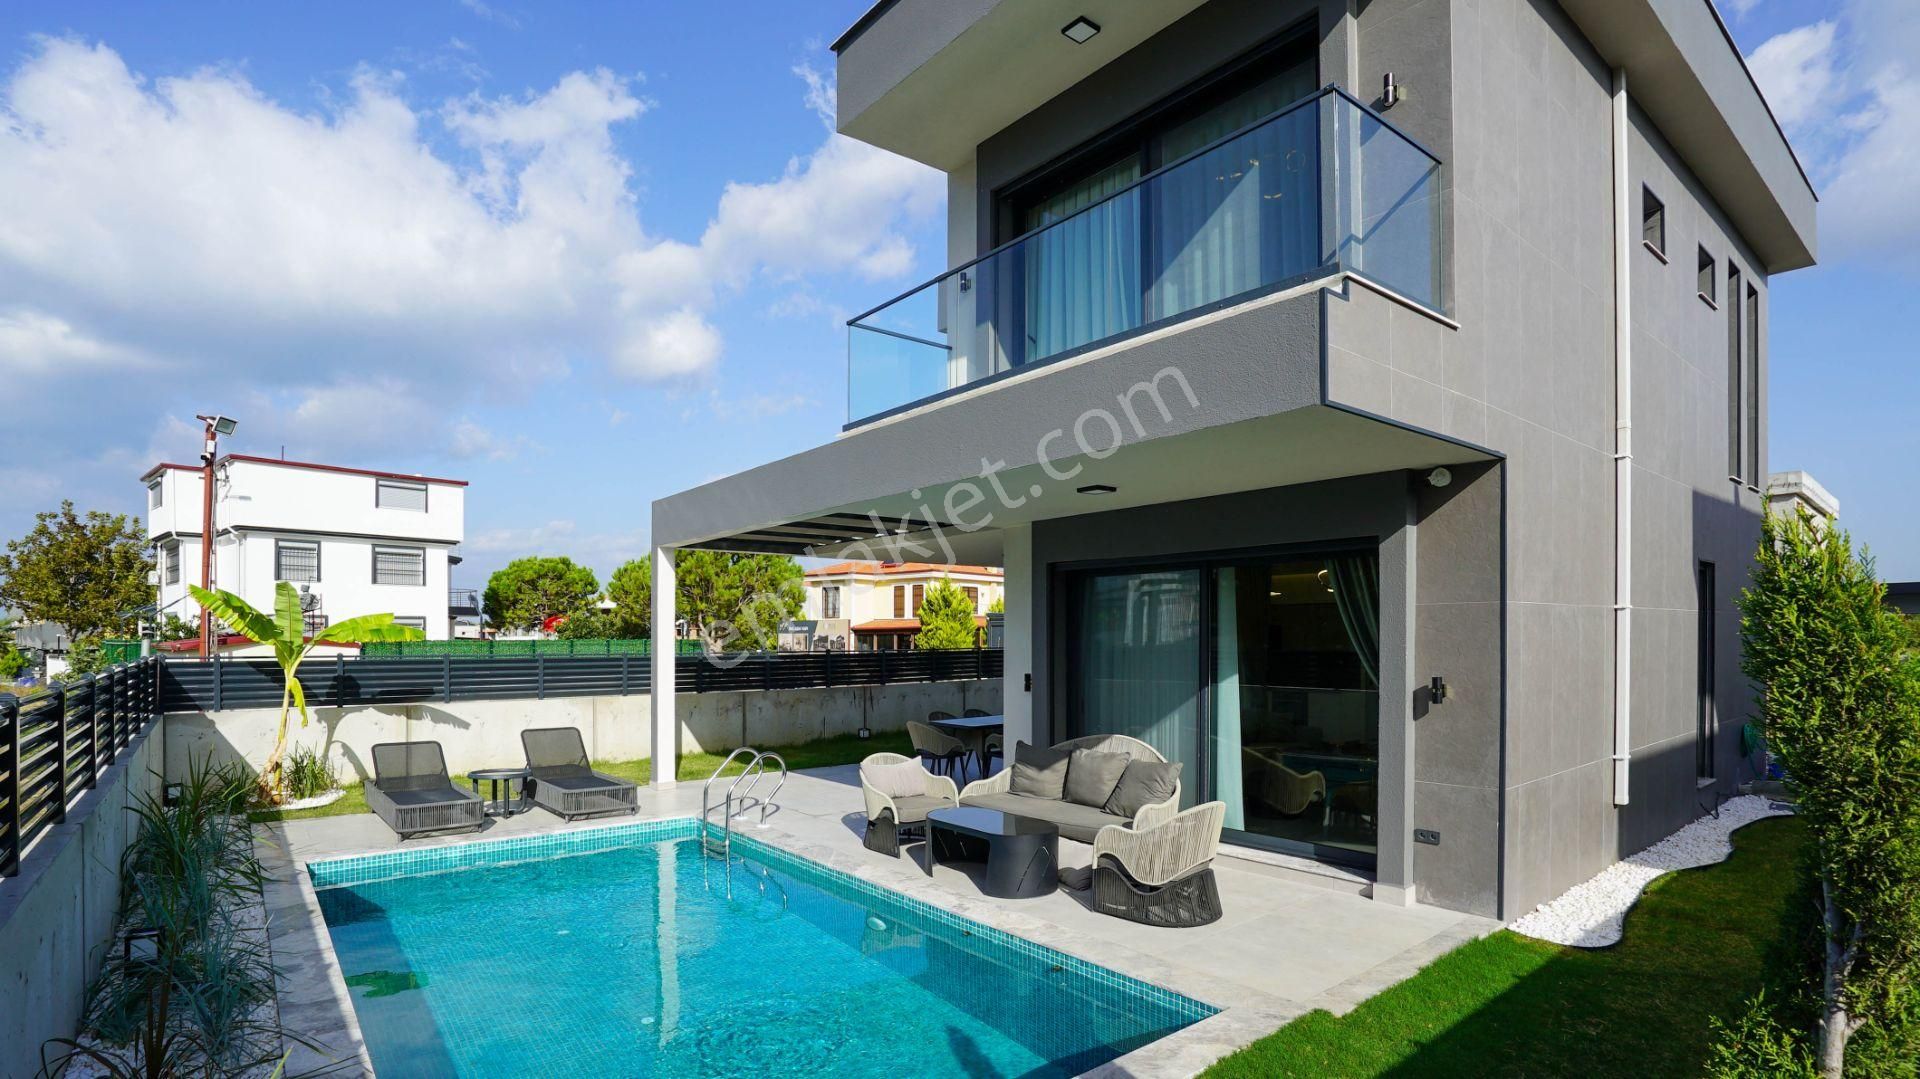 Kuşadası Güzelçamlı Satılık Villa  Kuşadası'nda Satılık Denize Yakın Tam Müstakil Havuzlu Villa